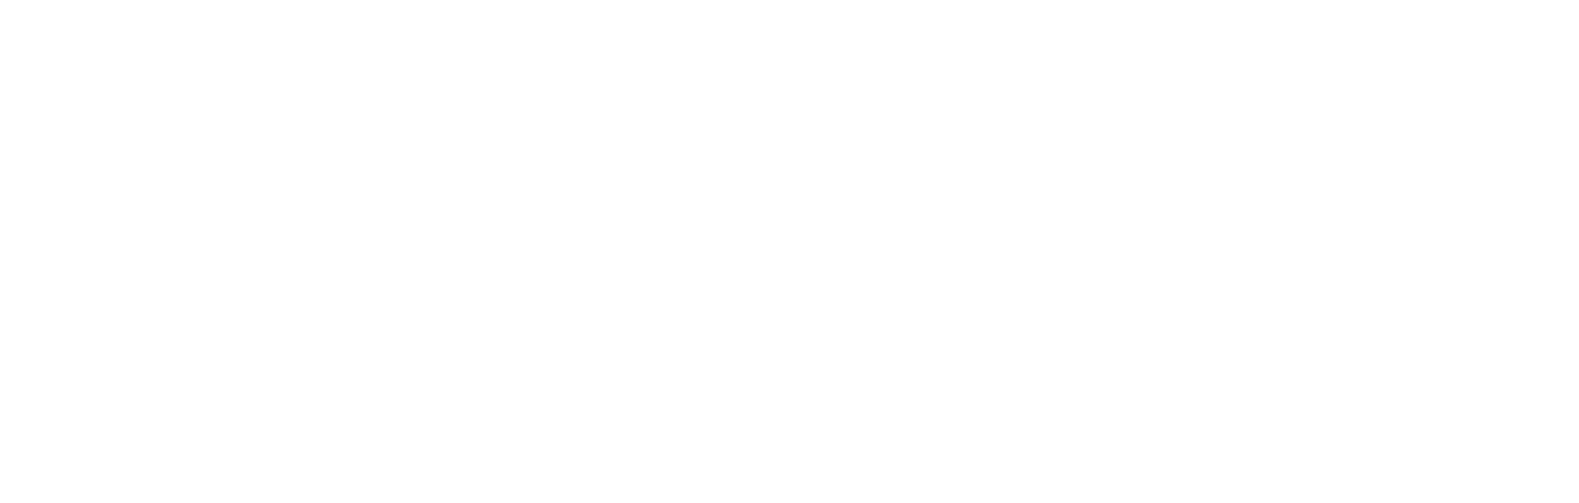 YOOZOO Interactive Logo groß für dunkle Hintergründe (transparentes PNG)